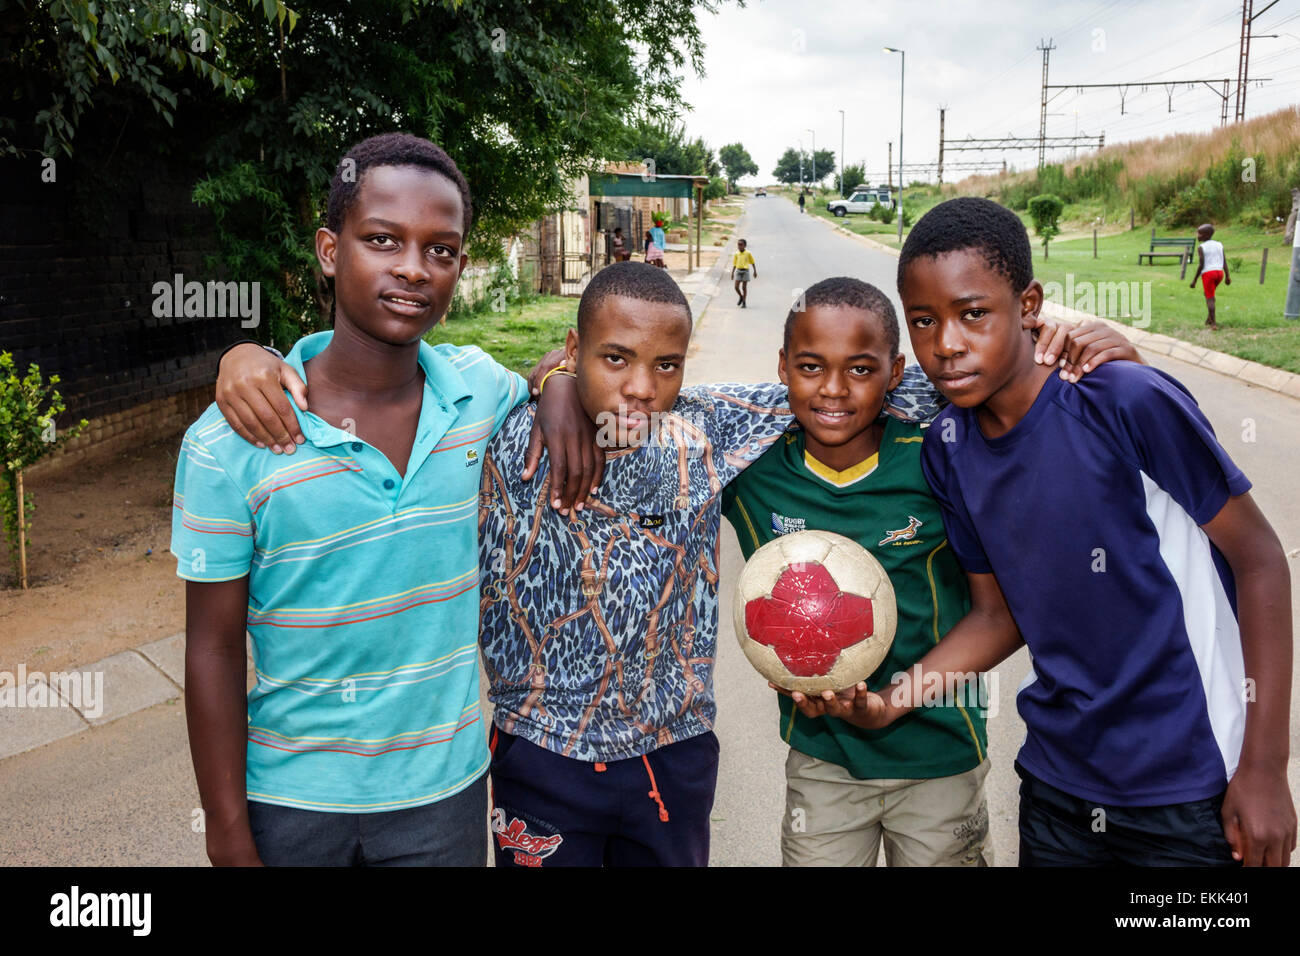 Johannesburg Afrique du Sud,Soweto,Black male boy garçons enfants enfants amis, foot foot foot futubol,ball,adolescents adolescents adolescents adolescents Sfri150307043 Banque D'Images